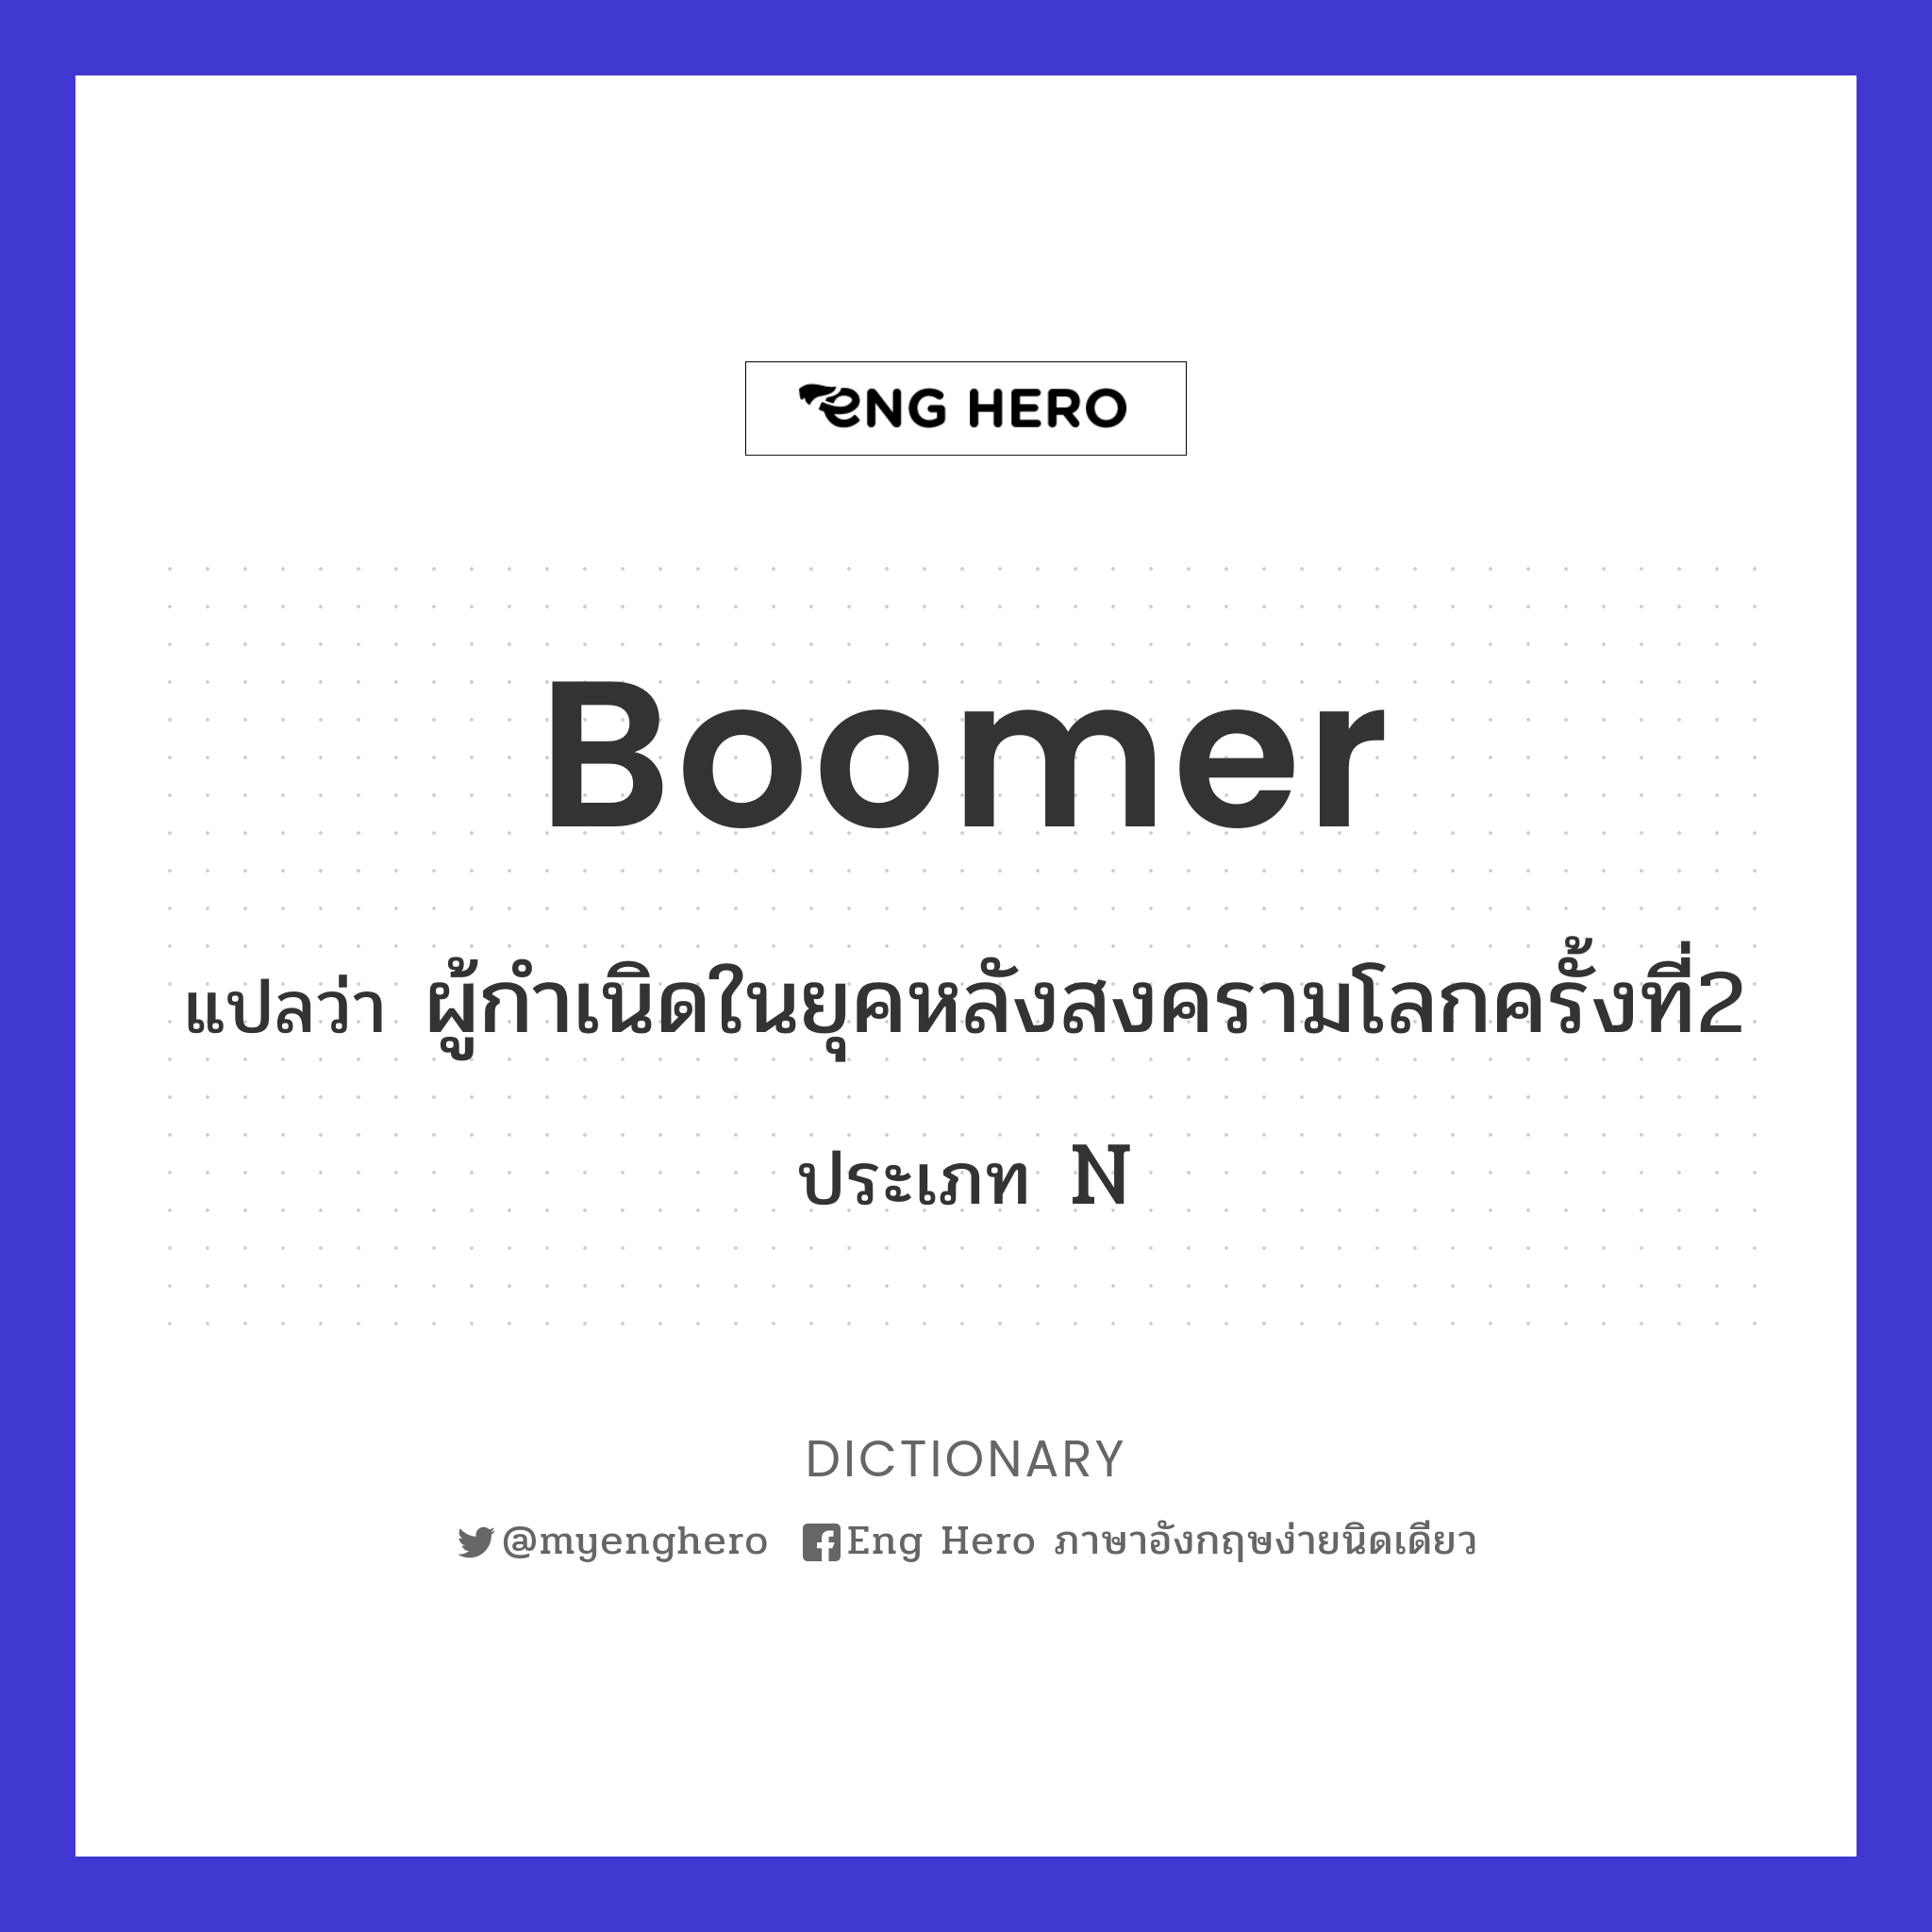 boomer